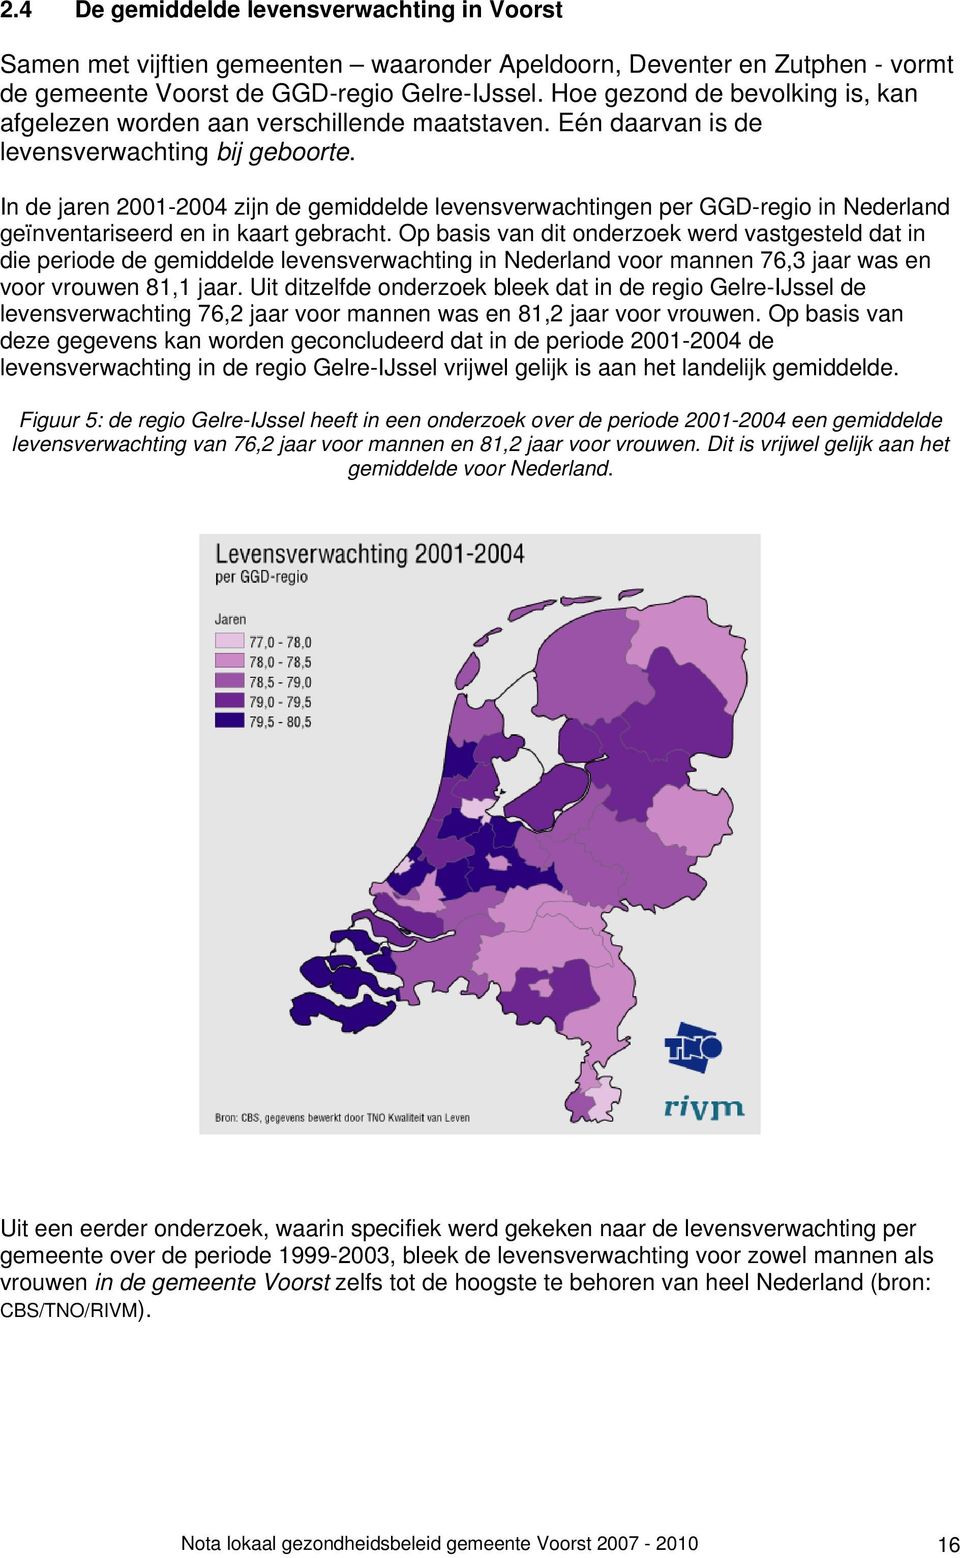 In de jaren 2001-2004 zijn de gemiddelde levensverwachtingen per GGD-regio in Nederland geïnventariseerd en in kaart gebracht.